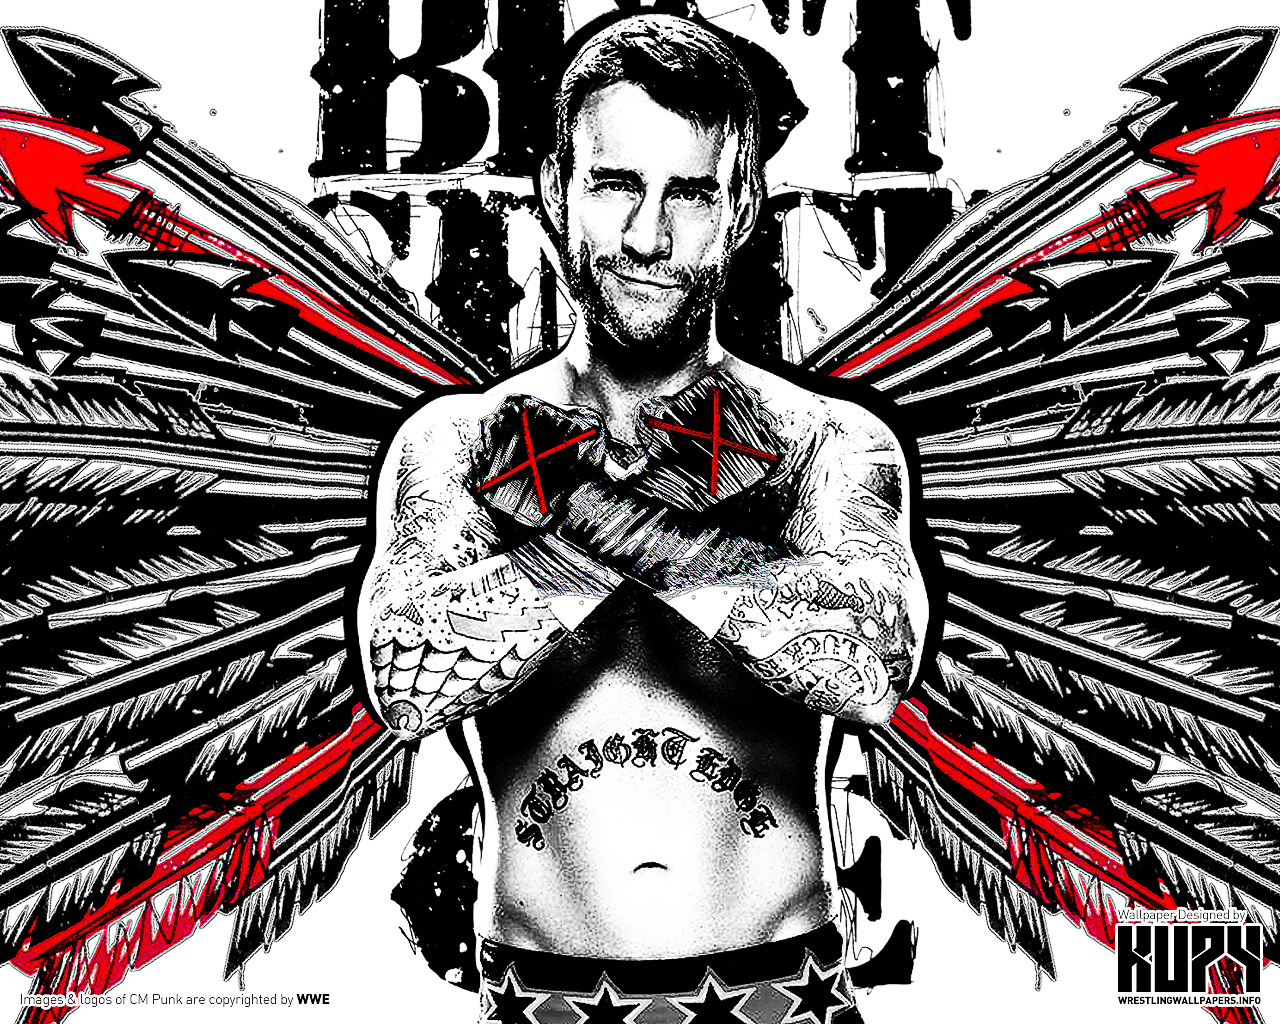 CM Punk - Best Since Day 1 - WWE Wallpaper (36292022) - Fanpop